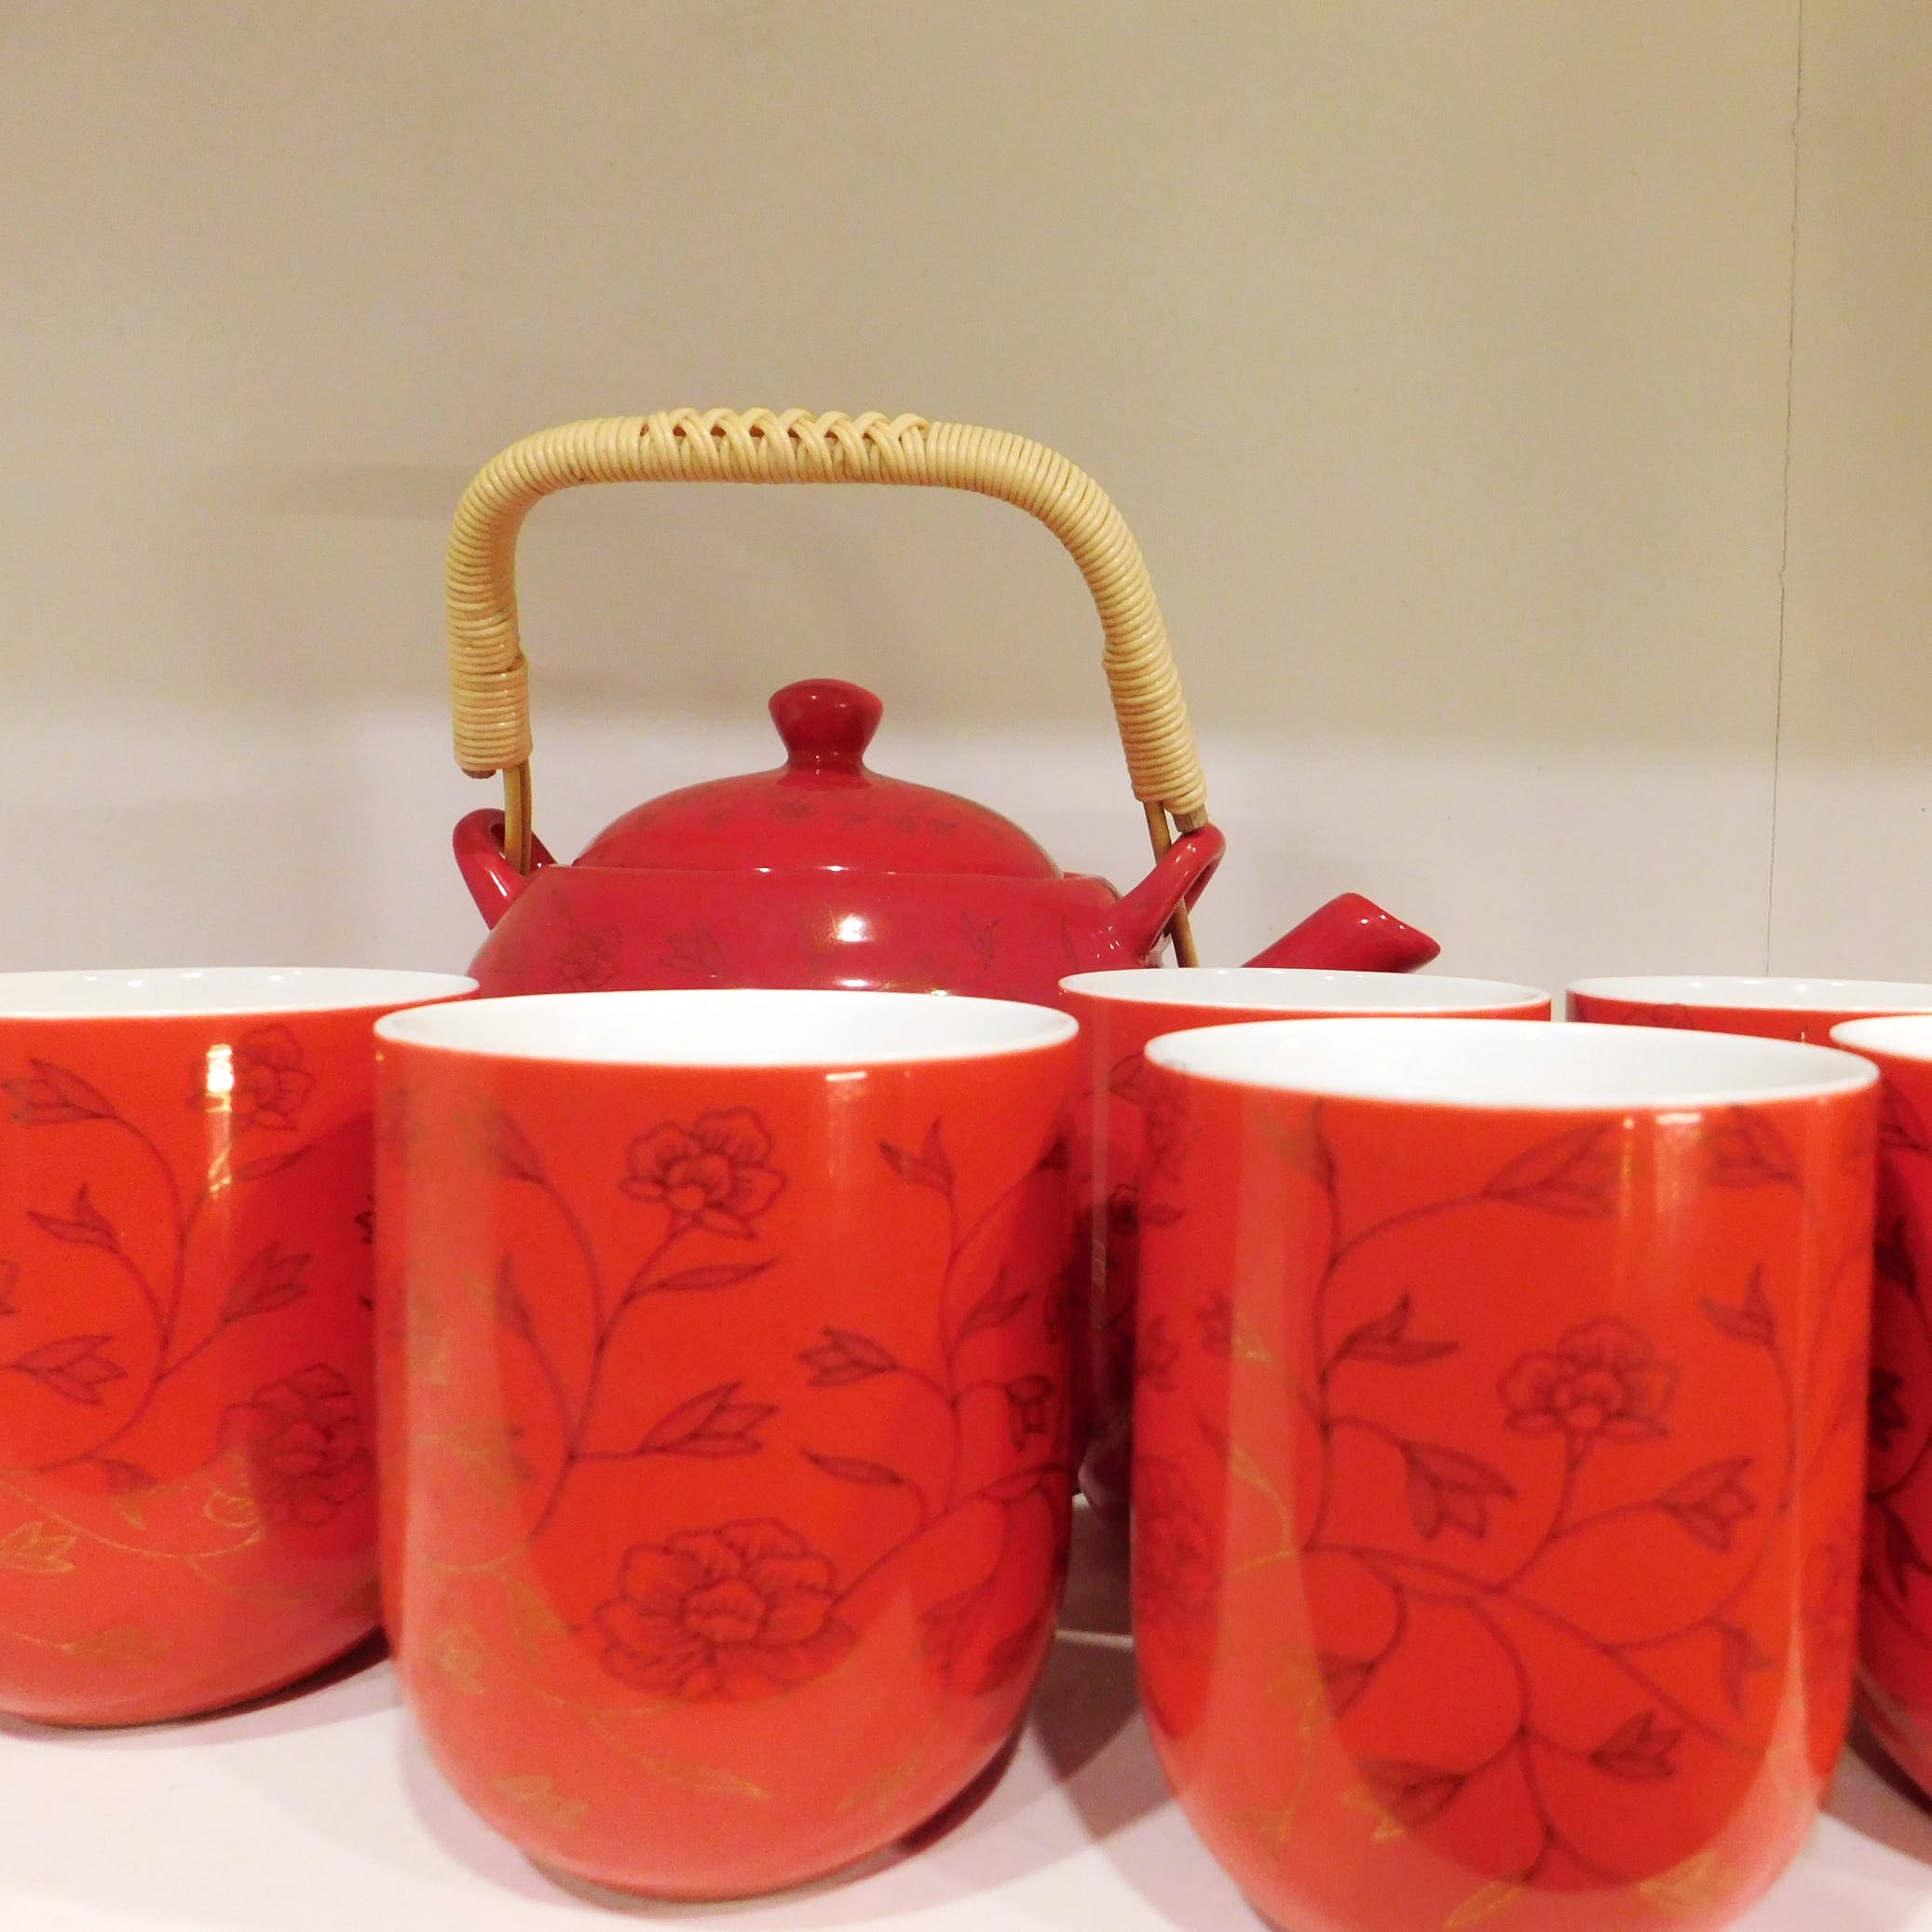 Red,Lid,Orange,Ceramic,Material property,Tableware,Peach